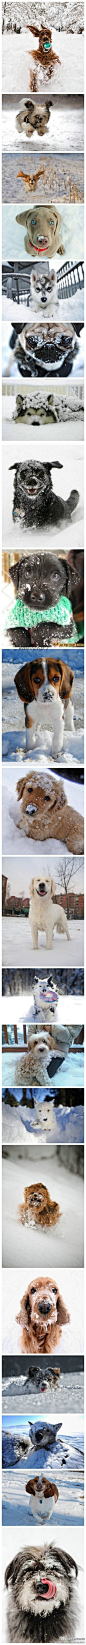 [狗和雪] 